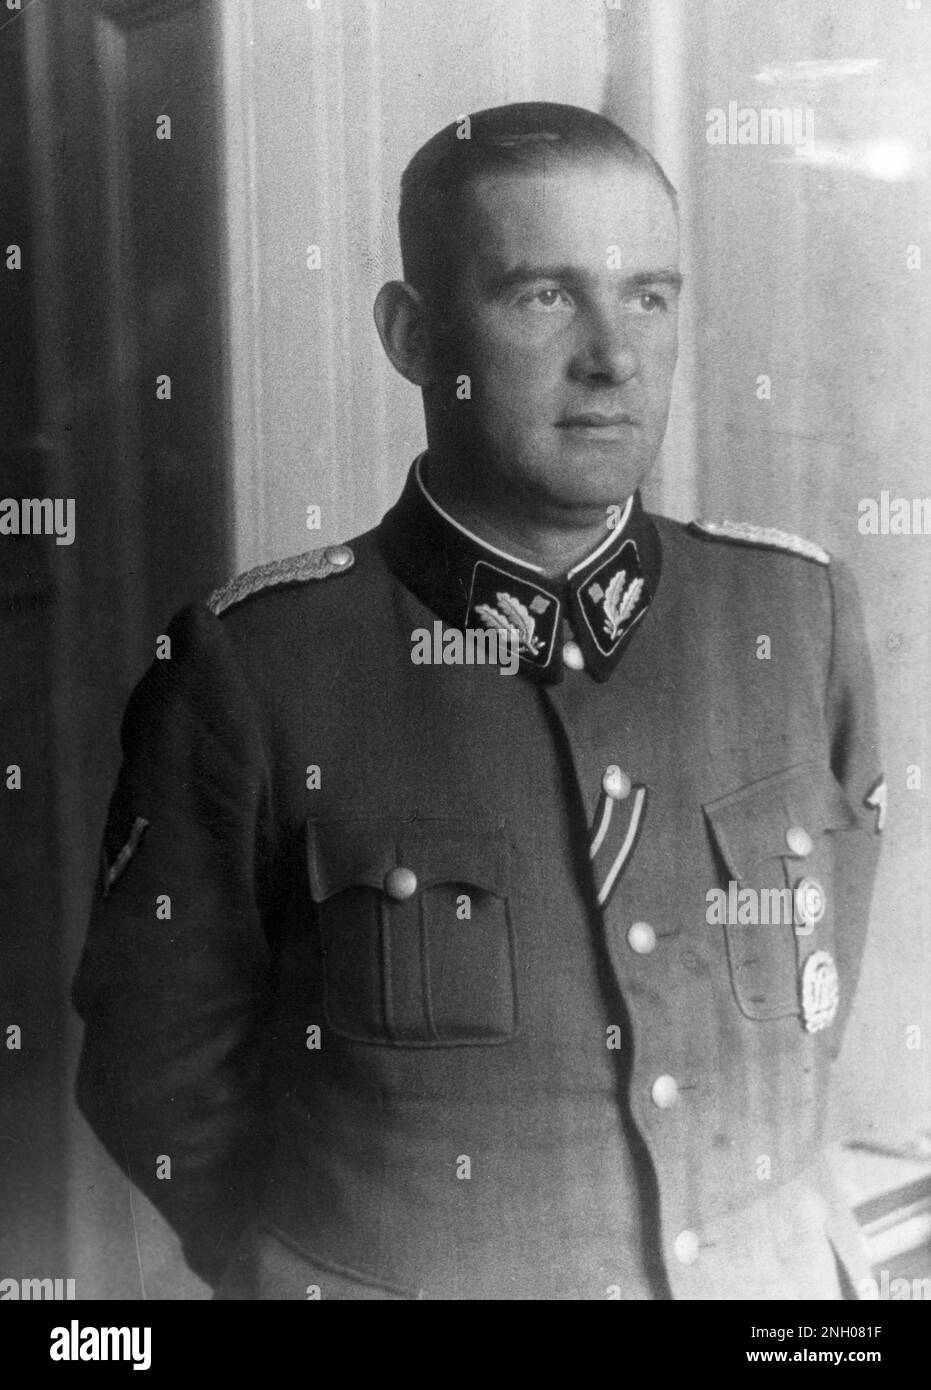 Officier SS Odilo Globocnik (germanisé à Globotschnigg ). Il a joué un rôle de premier plan dans l'opération Reinhard, le meurtre organisé d'environ un million et demi de Juifs dans les camps d'extermination de Majdanek, Treblinka, Sobibor et Belzec Banque D'Images